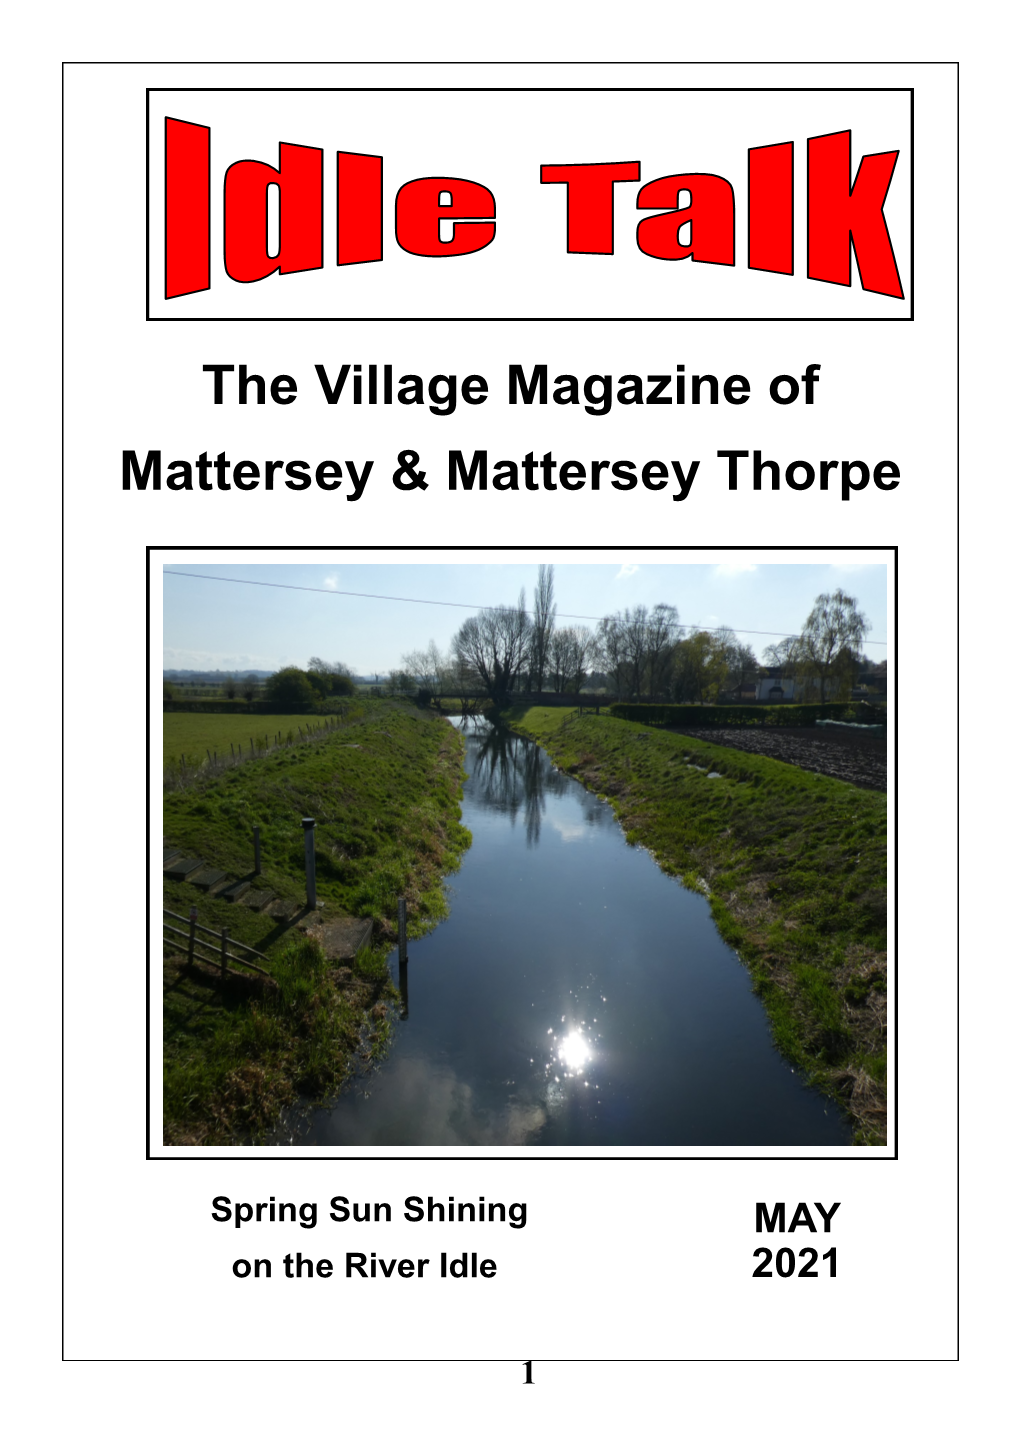 The Village Magazine of Mattersey & Mattersey Thorpe